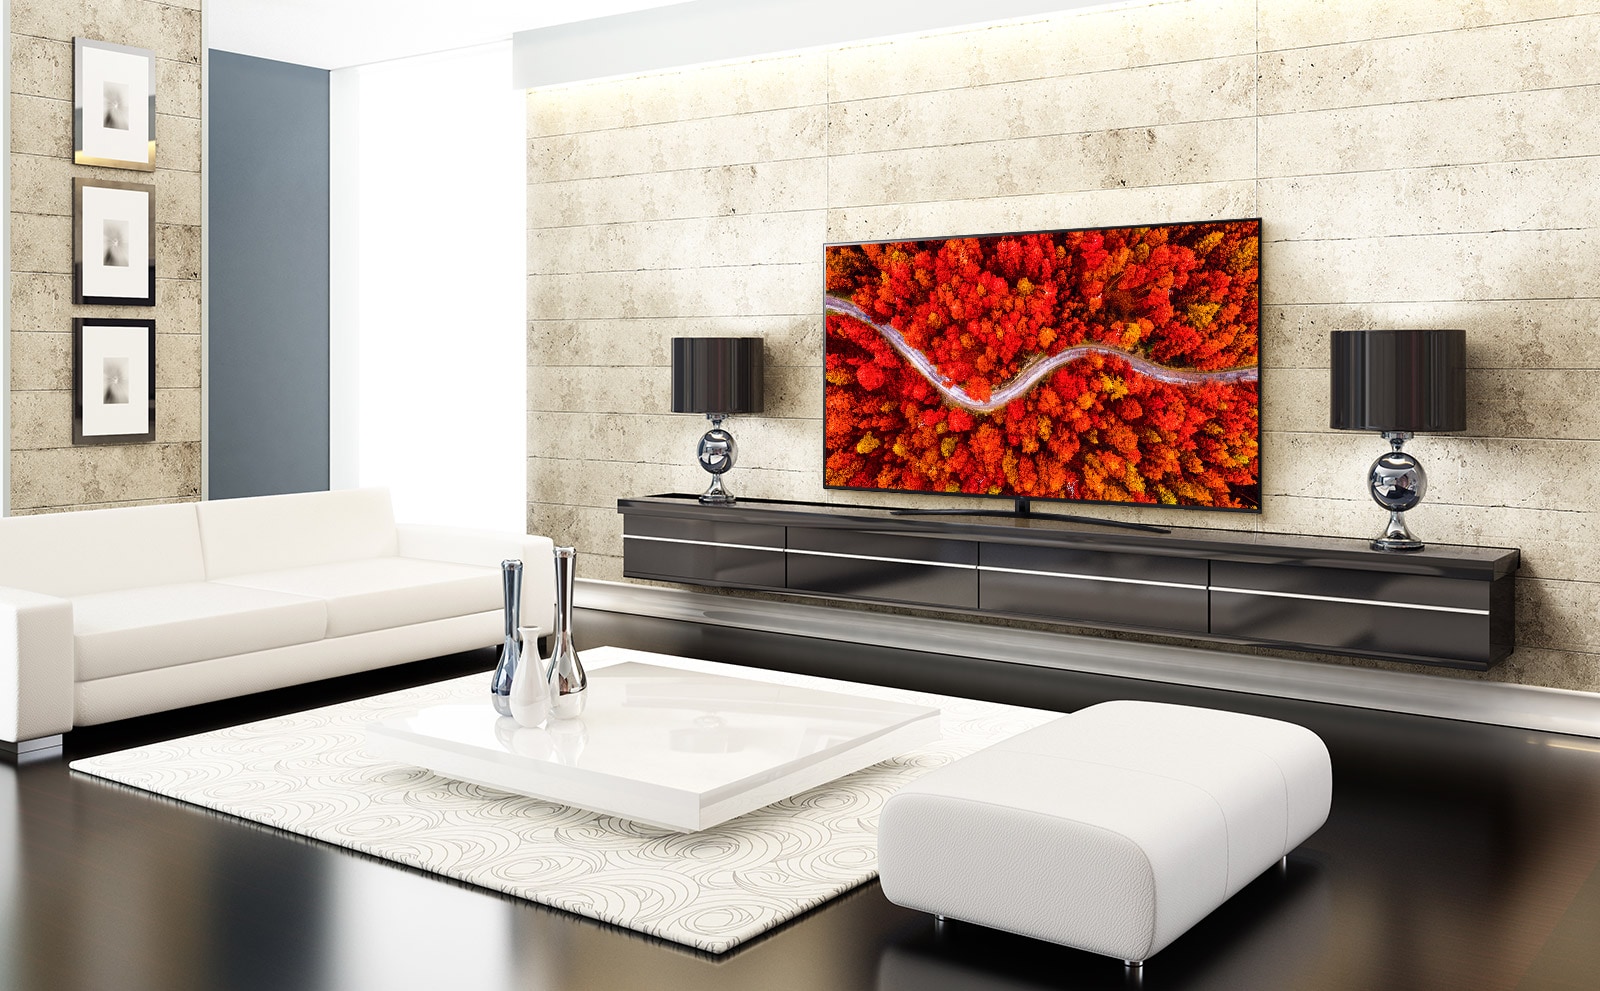 Люксовая гостиная с телевизором, на котором демонстрируется аэросъемка осеннего леса.